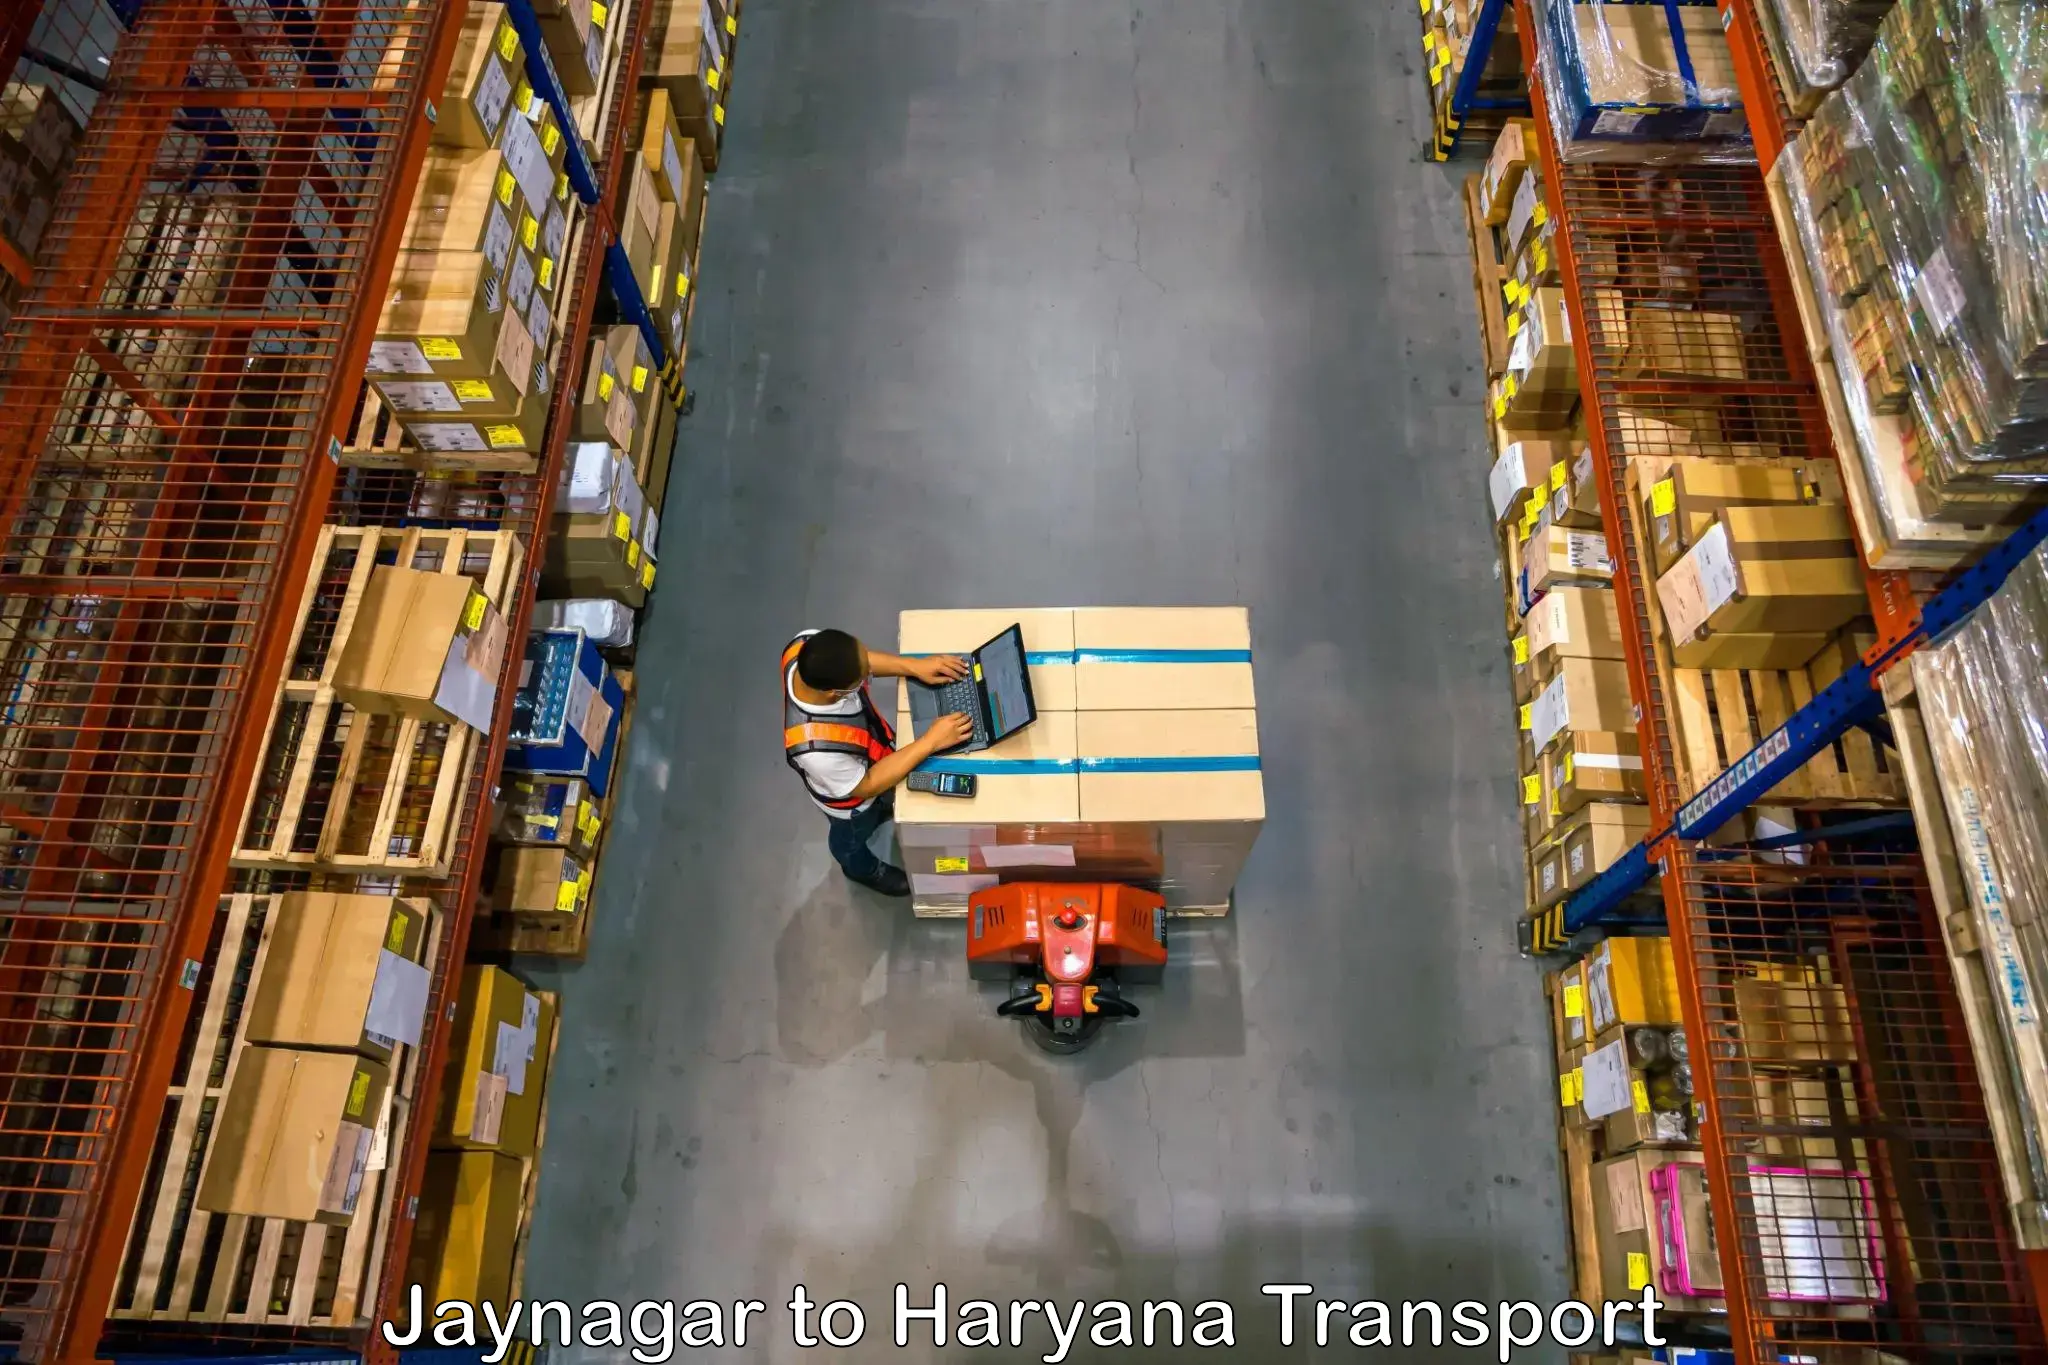 Lorry transport service Jaynagar to Kurukshetra